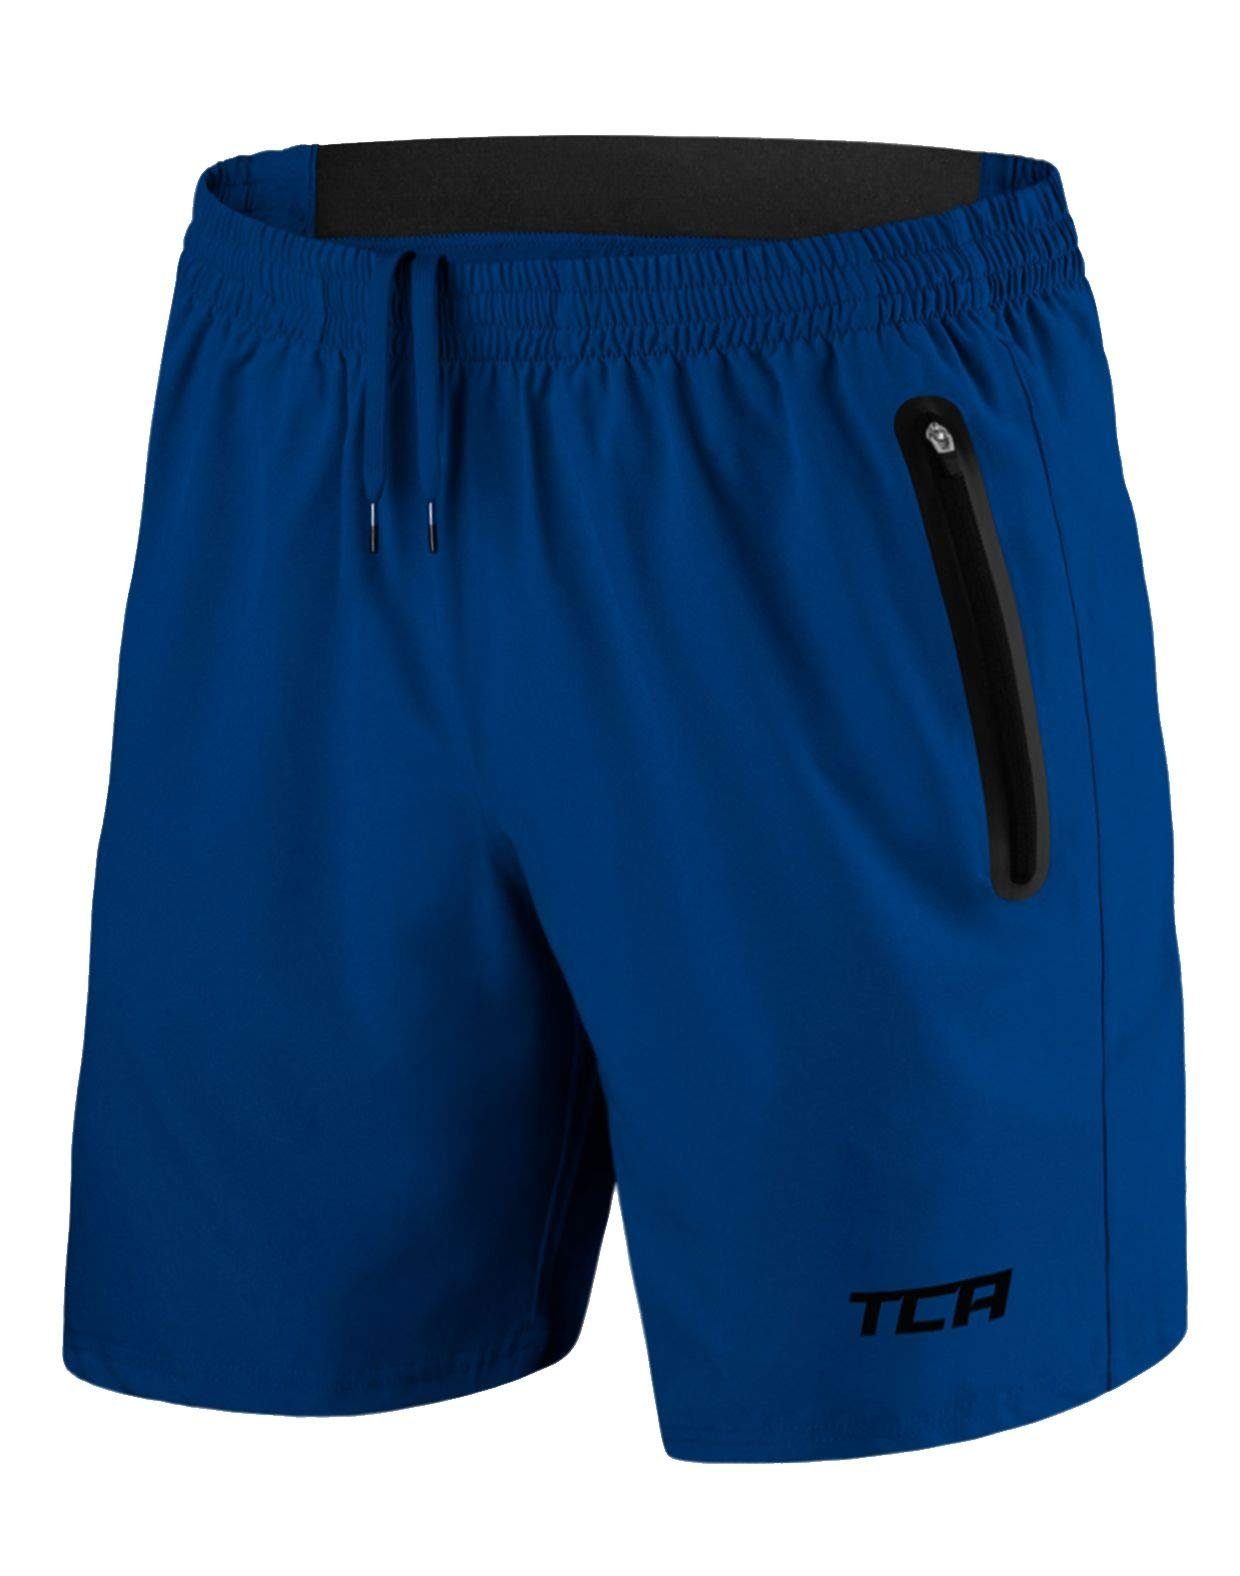 TCA Trainingsshorts TCA Herren Elite Tech Laufhose Gymshorts Trainingsshorts - Blau, XS